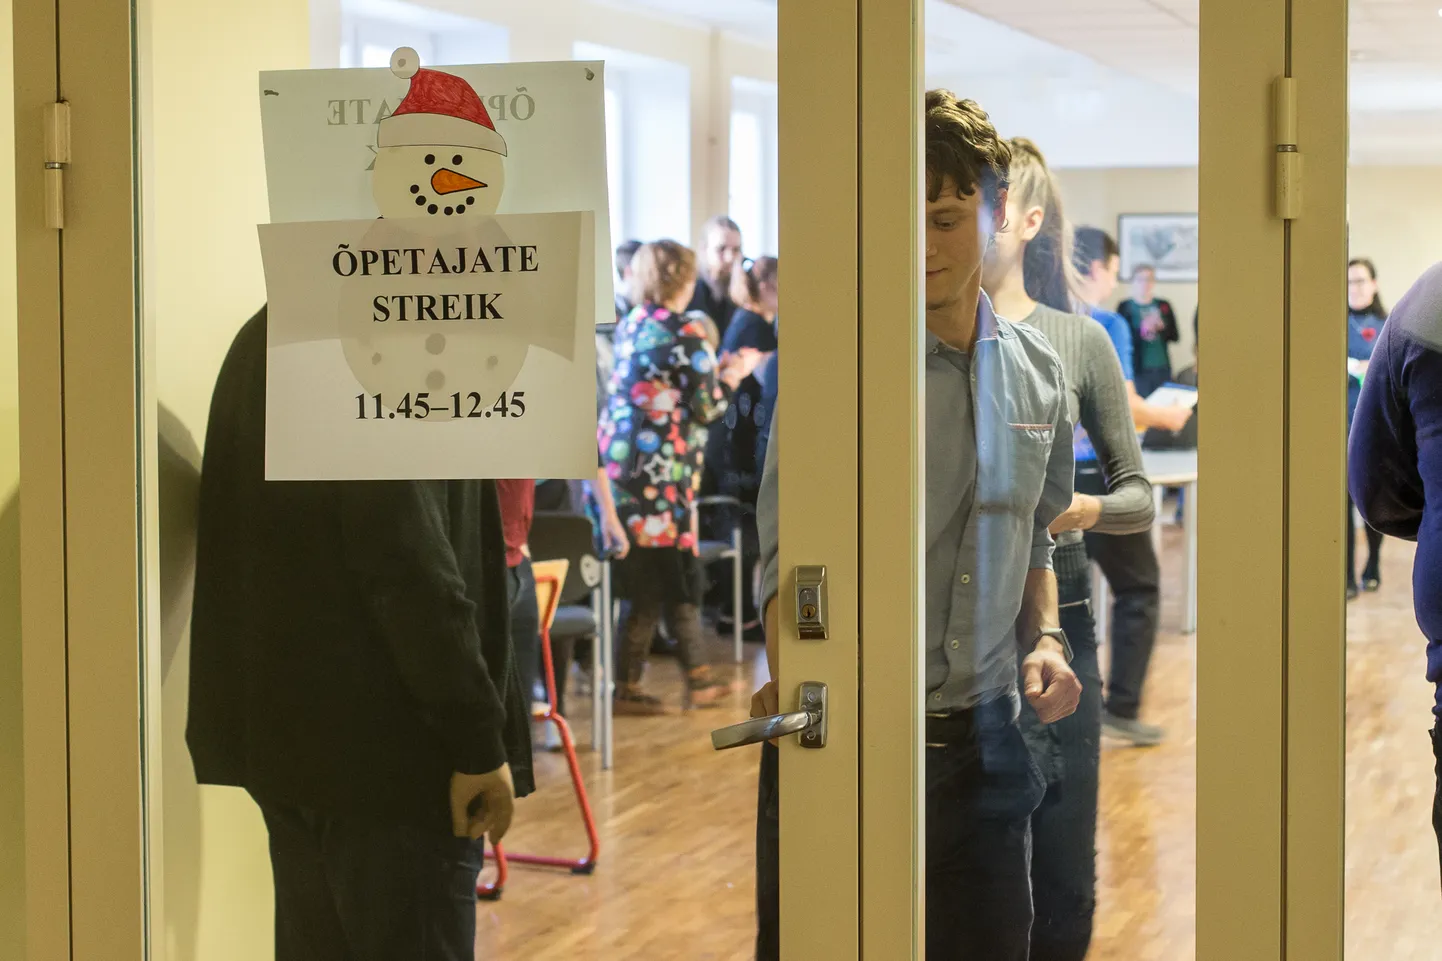 Предупредительная забастовка в поддержку директора школы для Эстонии уникальна - до сих пор учителя в Эстонии бастовали только ради повышения зарплаты.